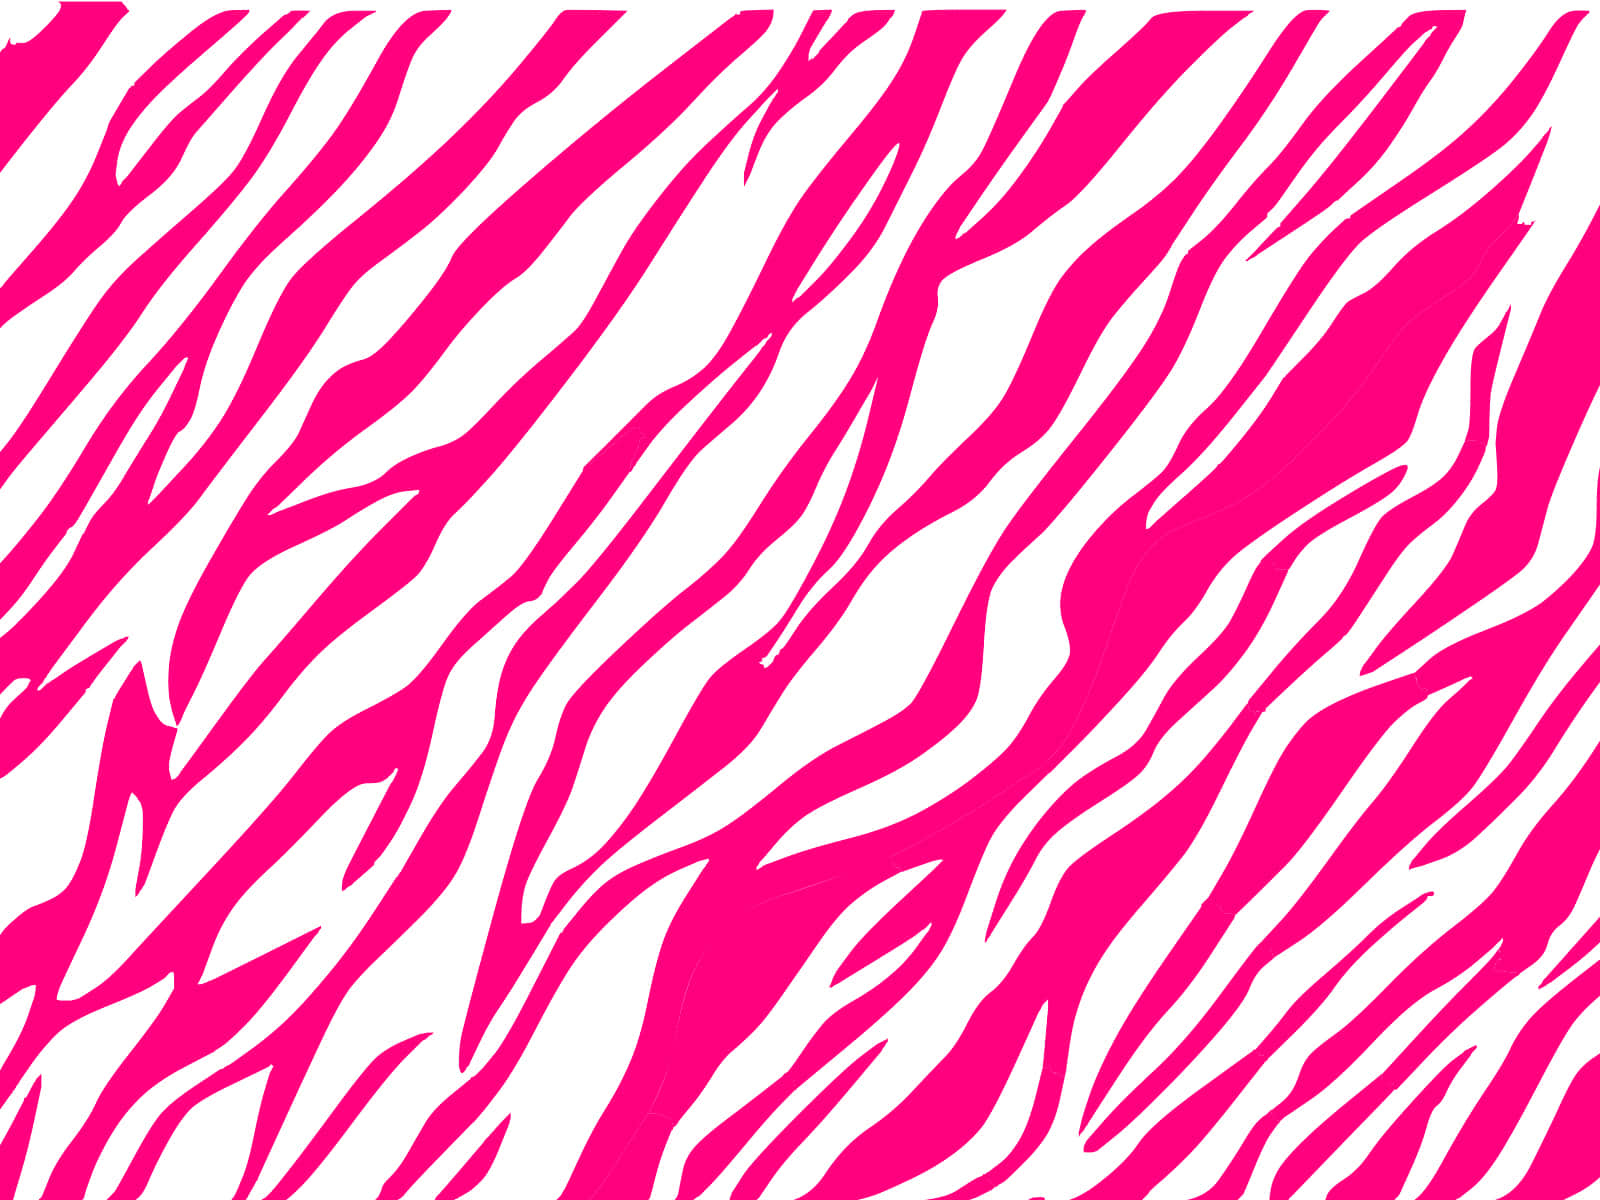 Umpadrão De Impressão De Zebra Rosa E Branco. Papel de Parede